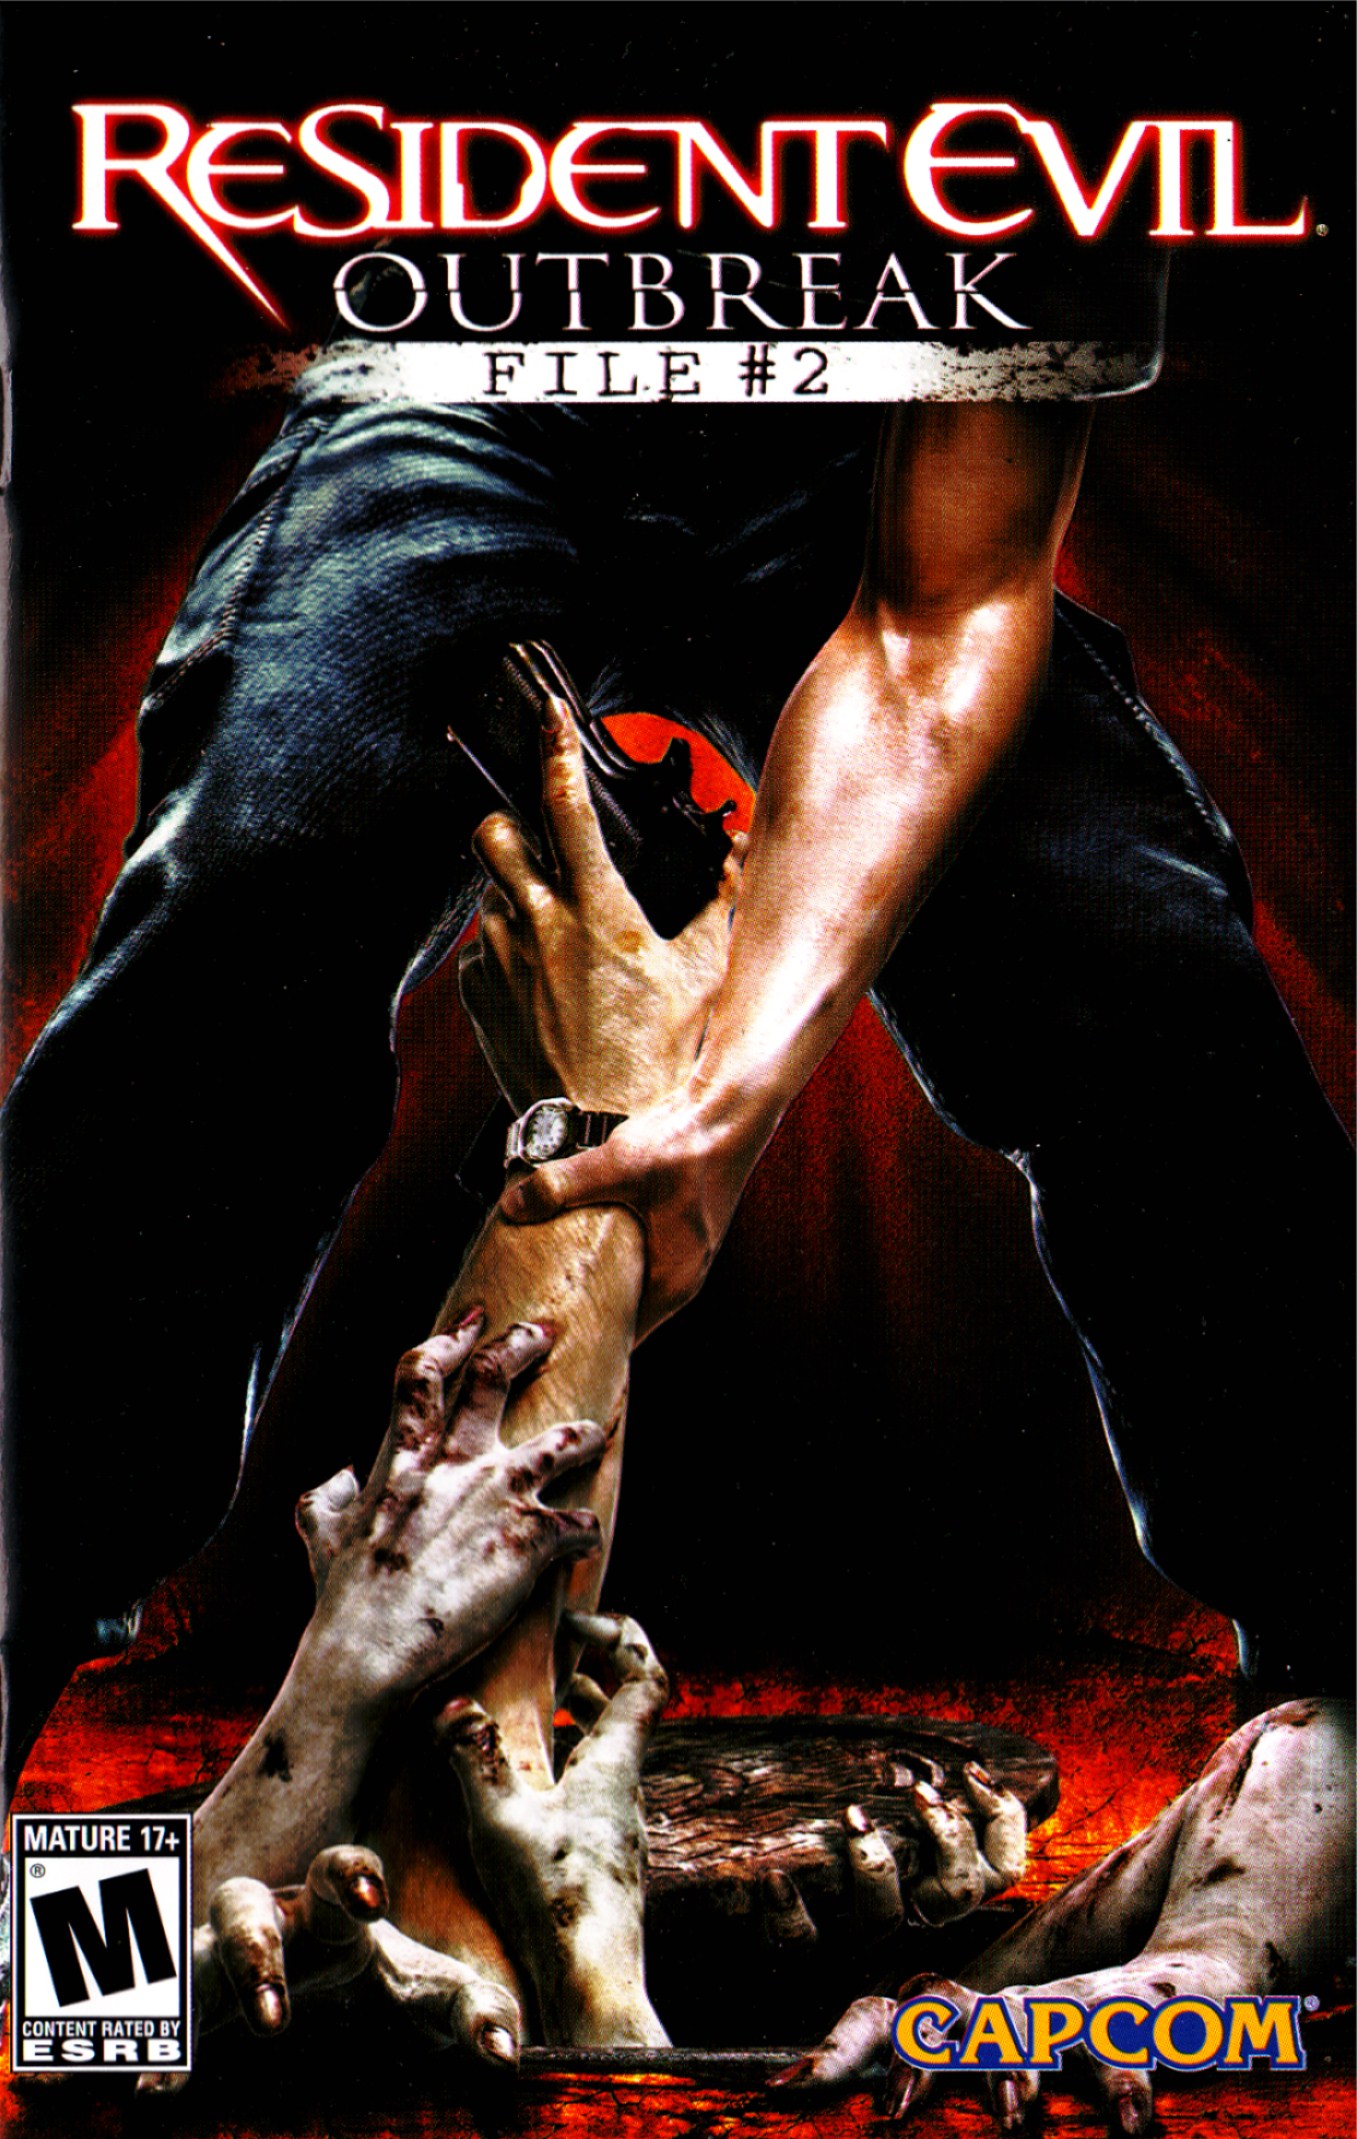 Resident Evil 4 Wallpaper